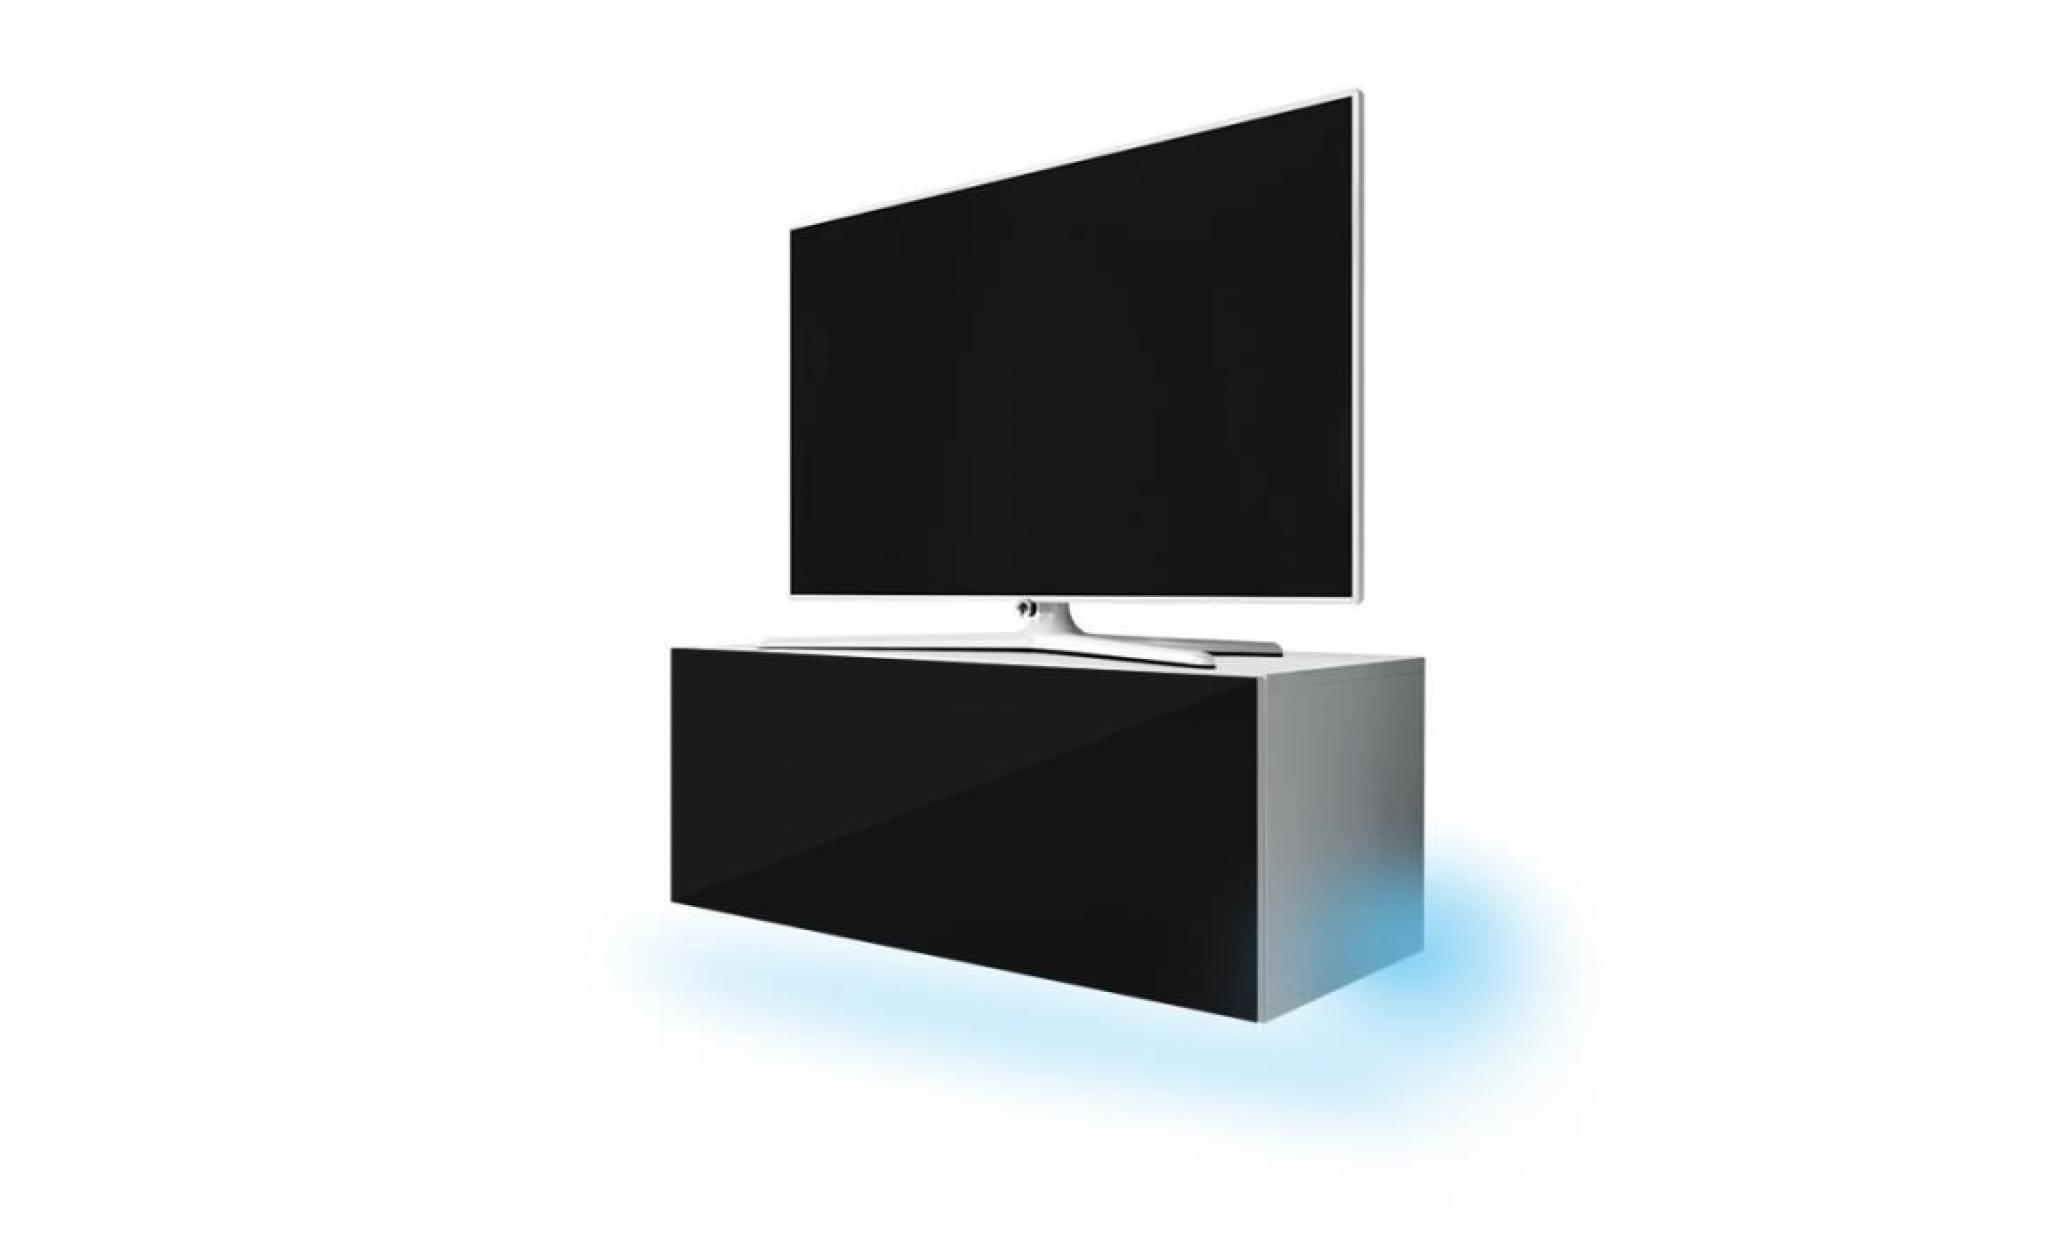 meuble tv / meuble de salon suspendu   lana   100 cm   blanc mat / noir brillant   avec led   style moderne   style classique pas cher